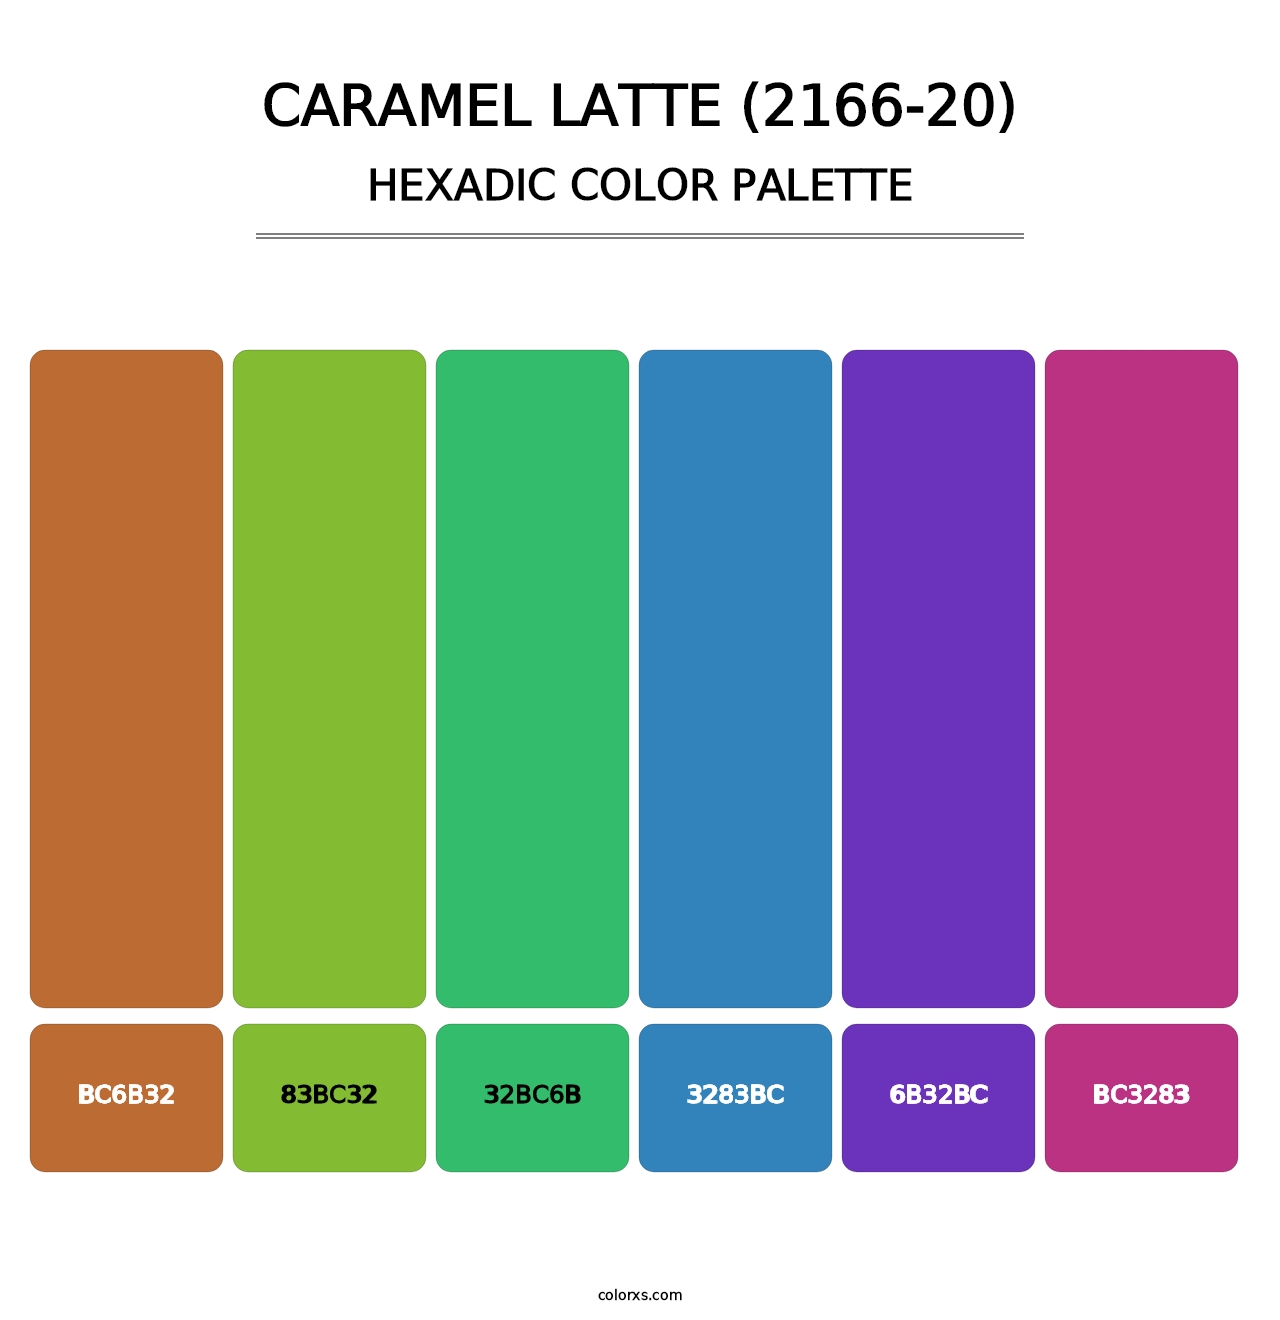 Caramel Latte (2166-20) - Hexadic Color Palette